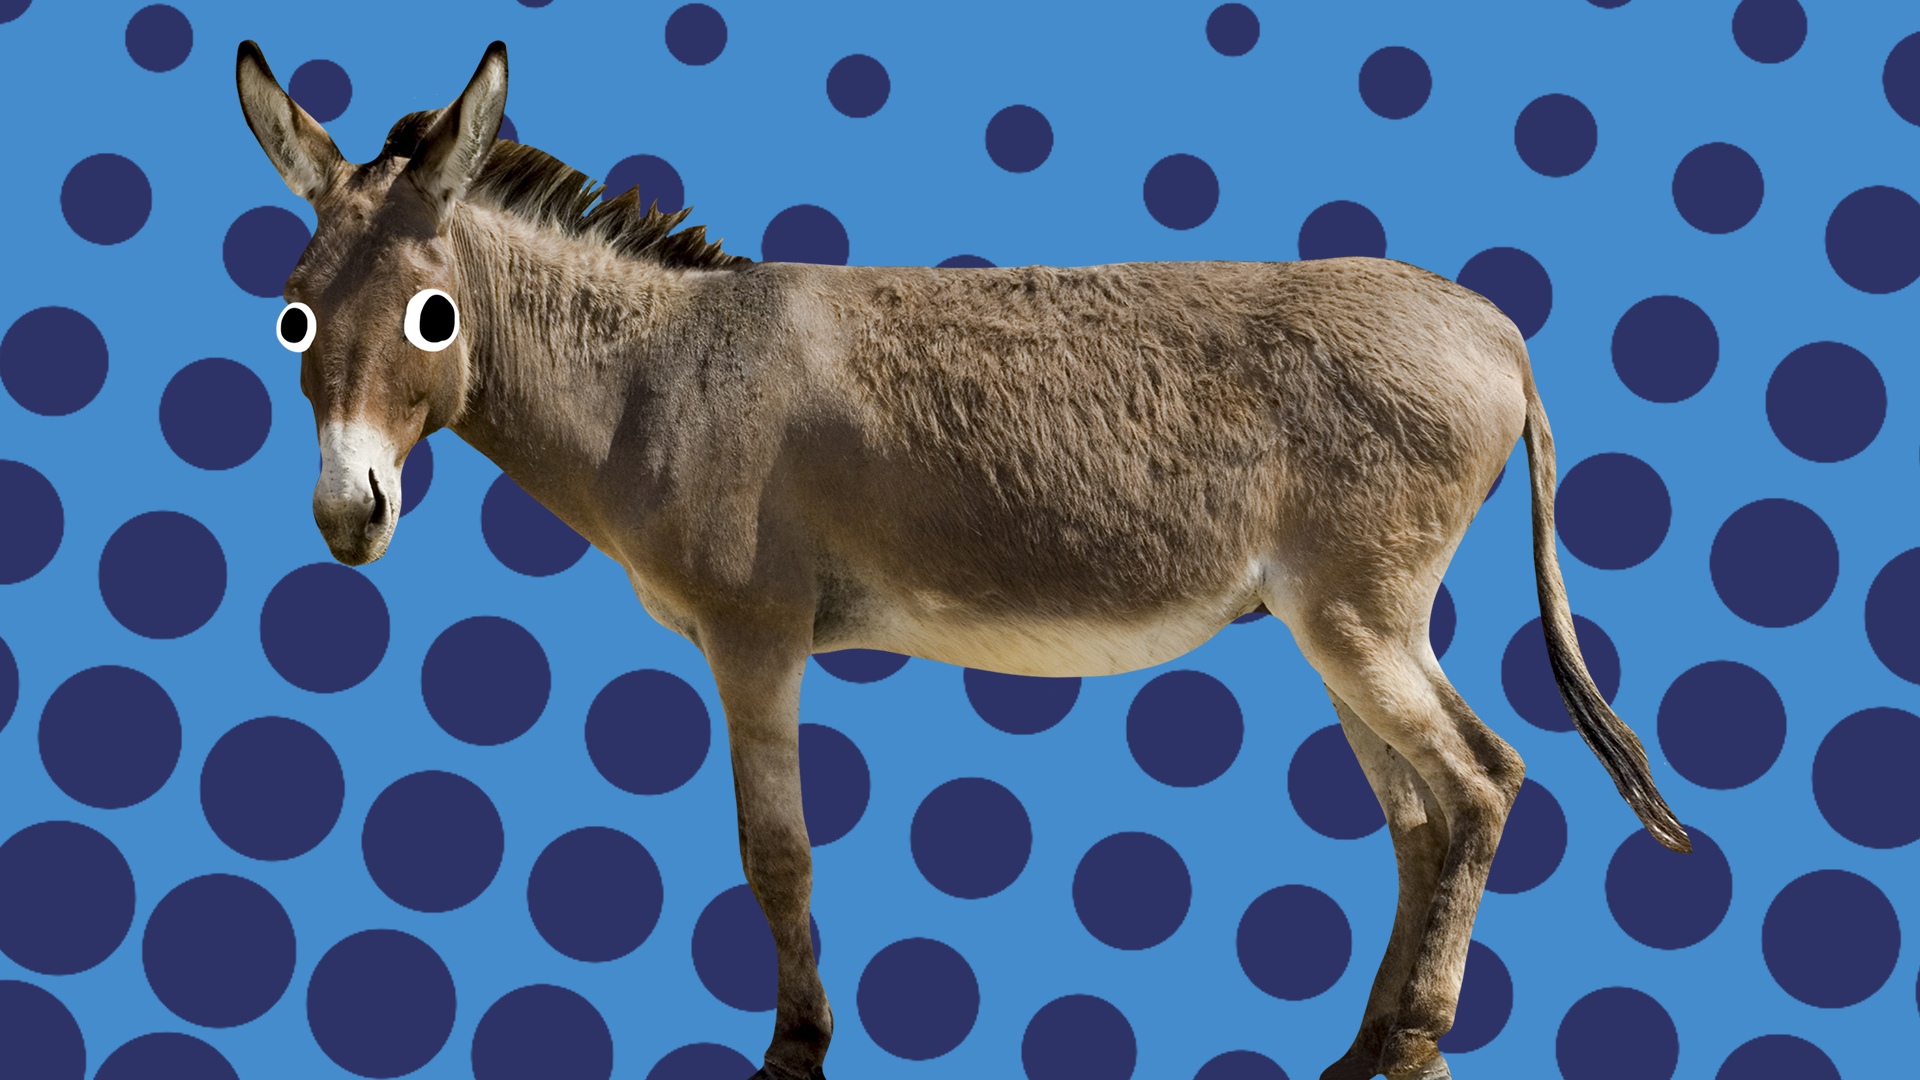 Donkey on blue background